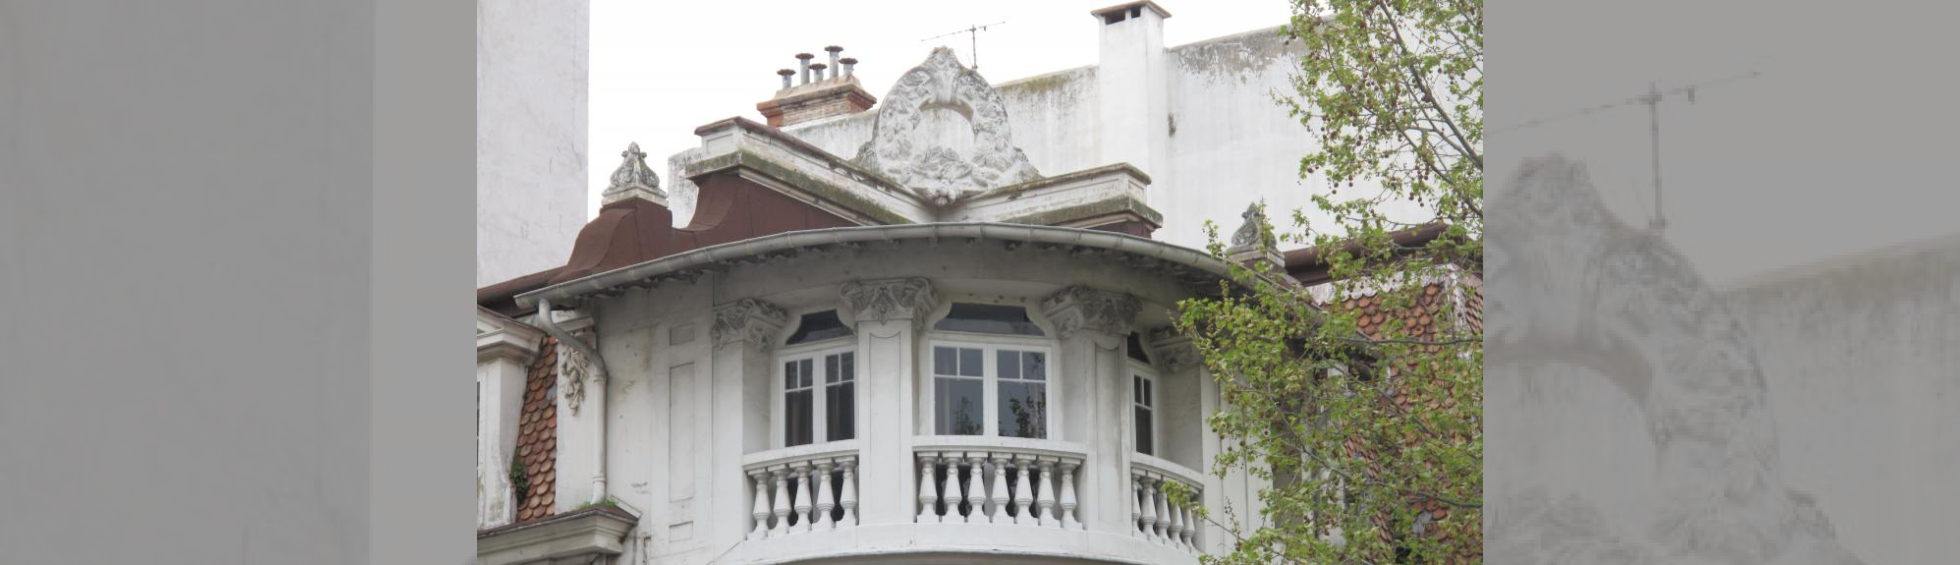  Angle du dernier niveau traité en courbe : 3 fenetres , balcons a balustres, sur le toit une couronne de branches de pin 